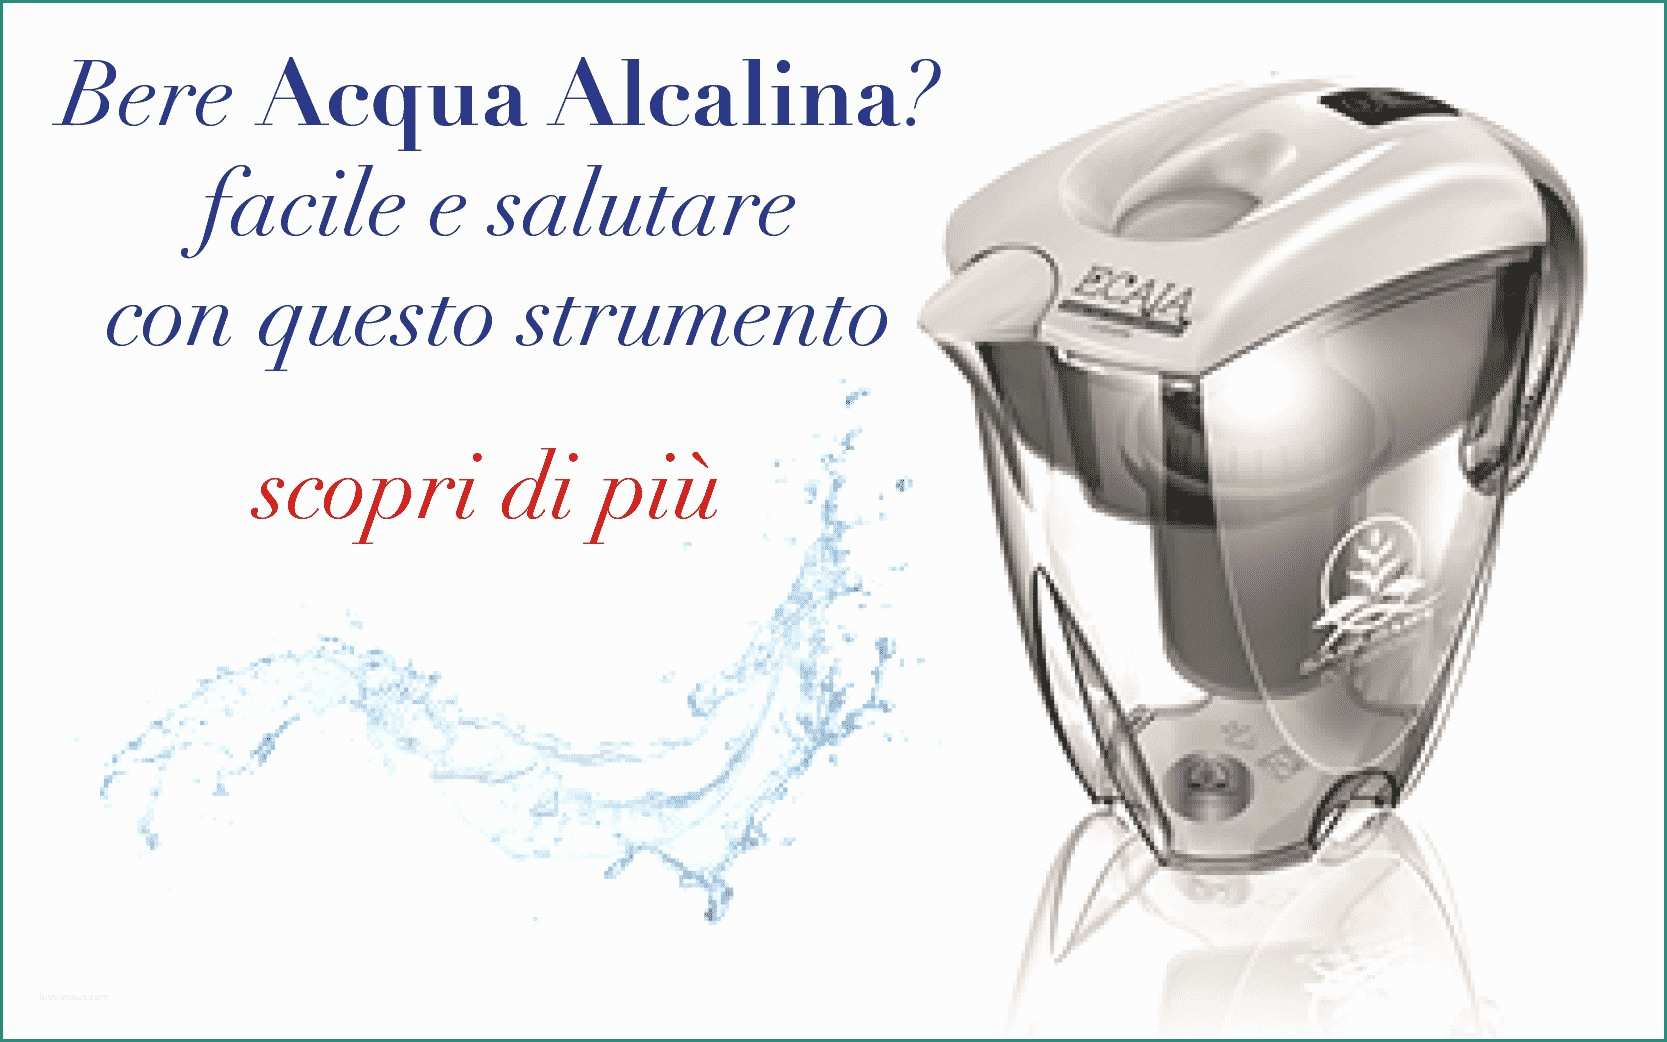 Acqua Alcalina In Bottiglia E Caraffa Ecaia Per Acqua Alcalina Ionizzata Fatta In Casa